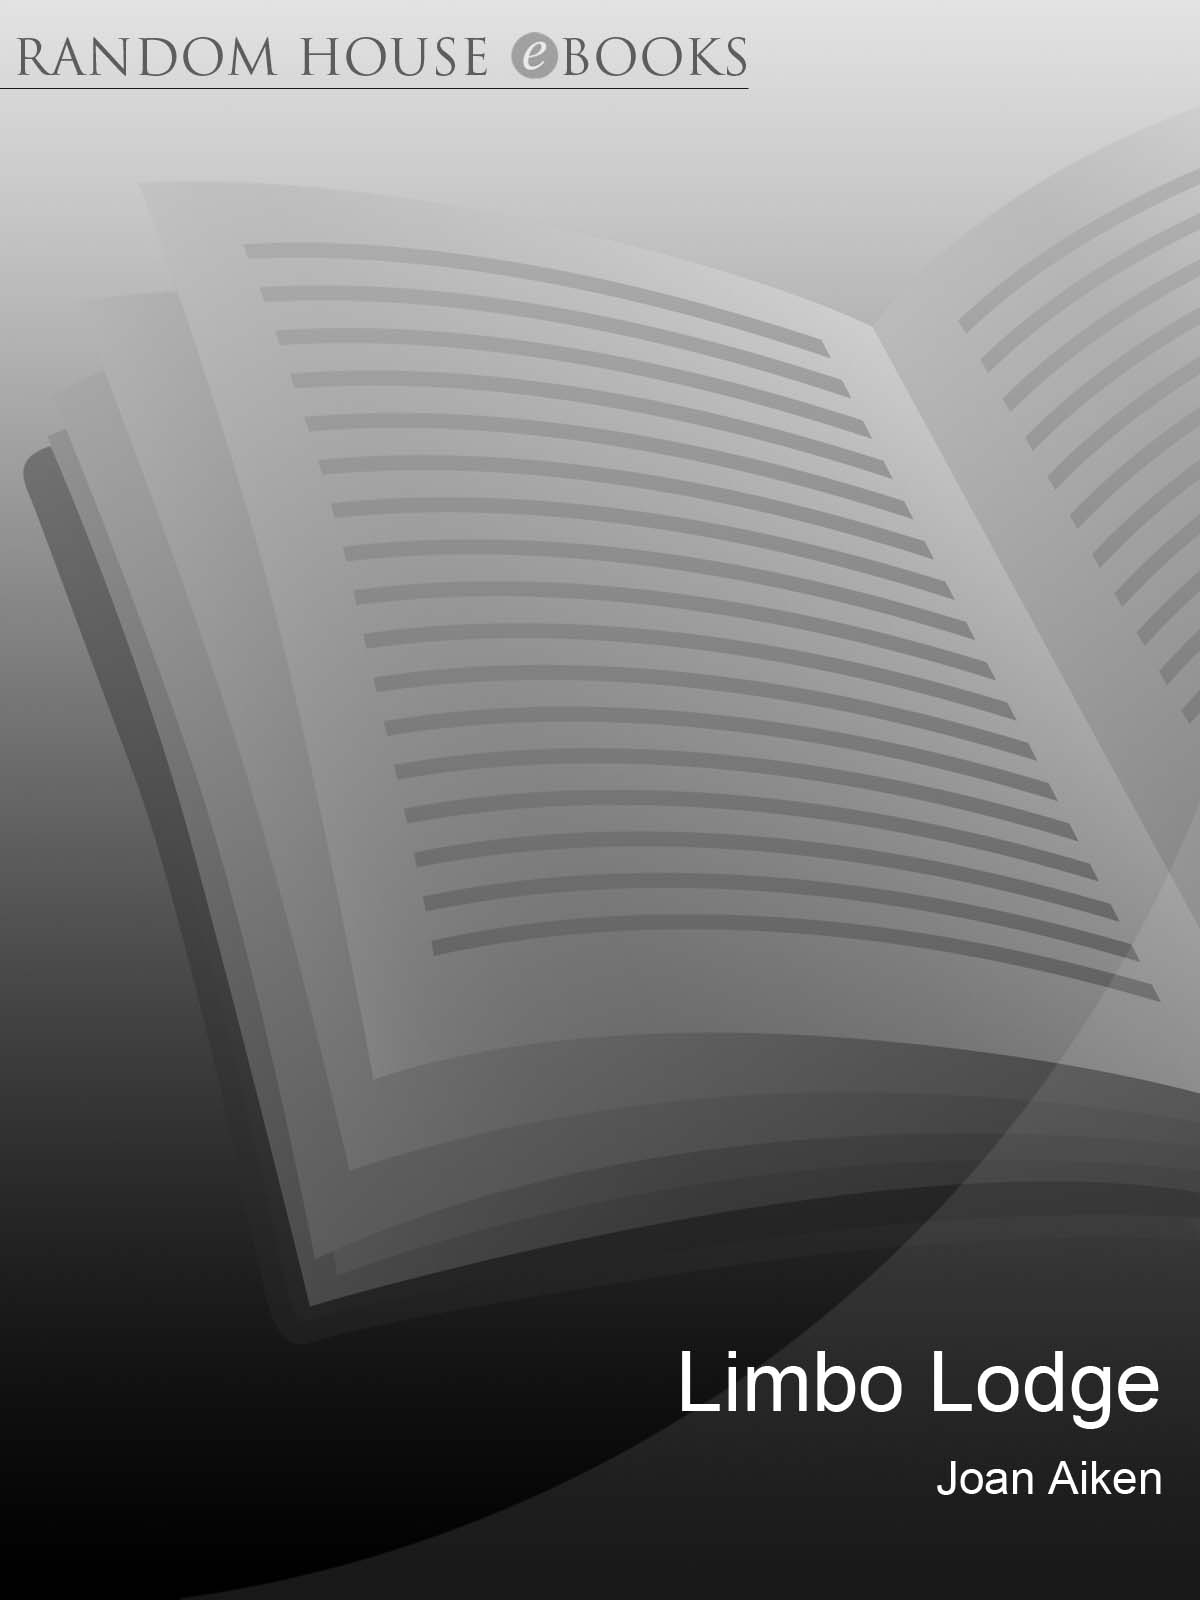 Limbo Lodge (2010) by Joan Aiken